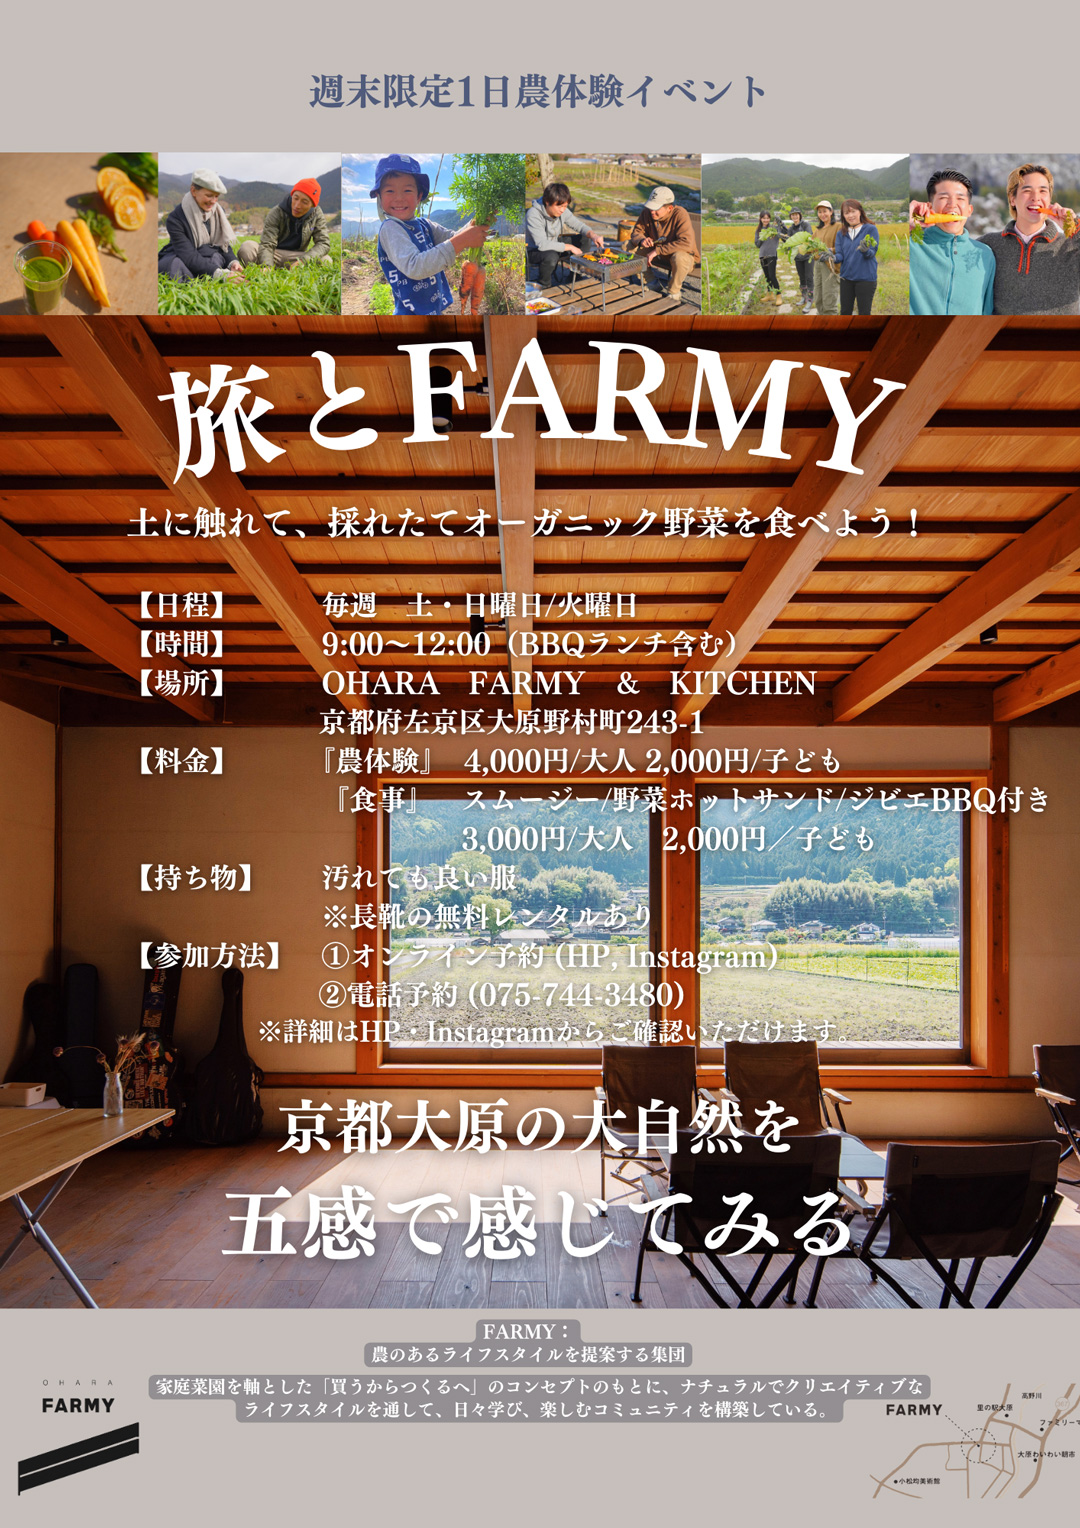 【毎週】1日農体験イベント&BBQ「旅とFARMY」